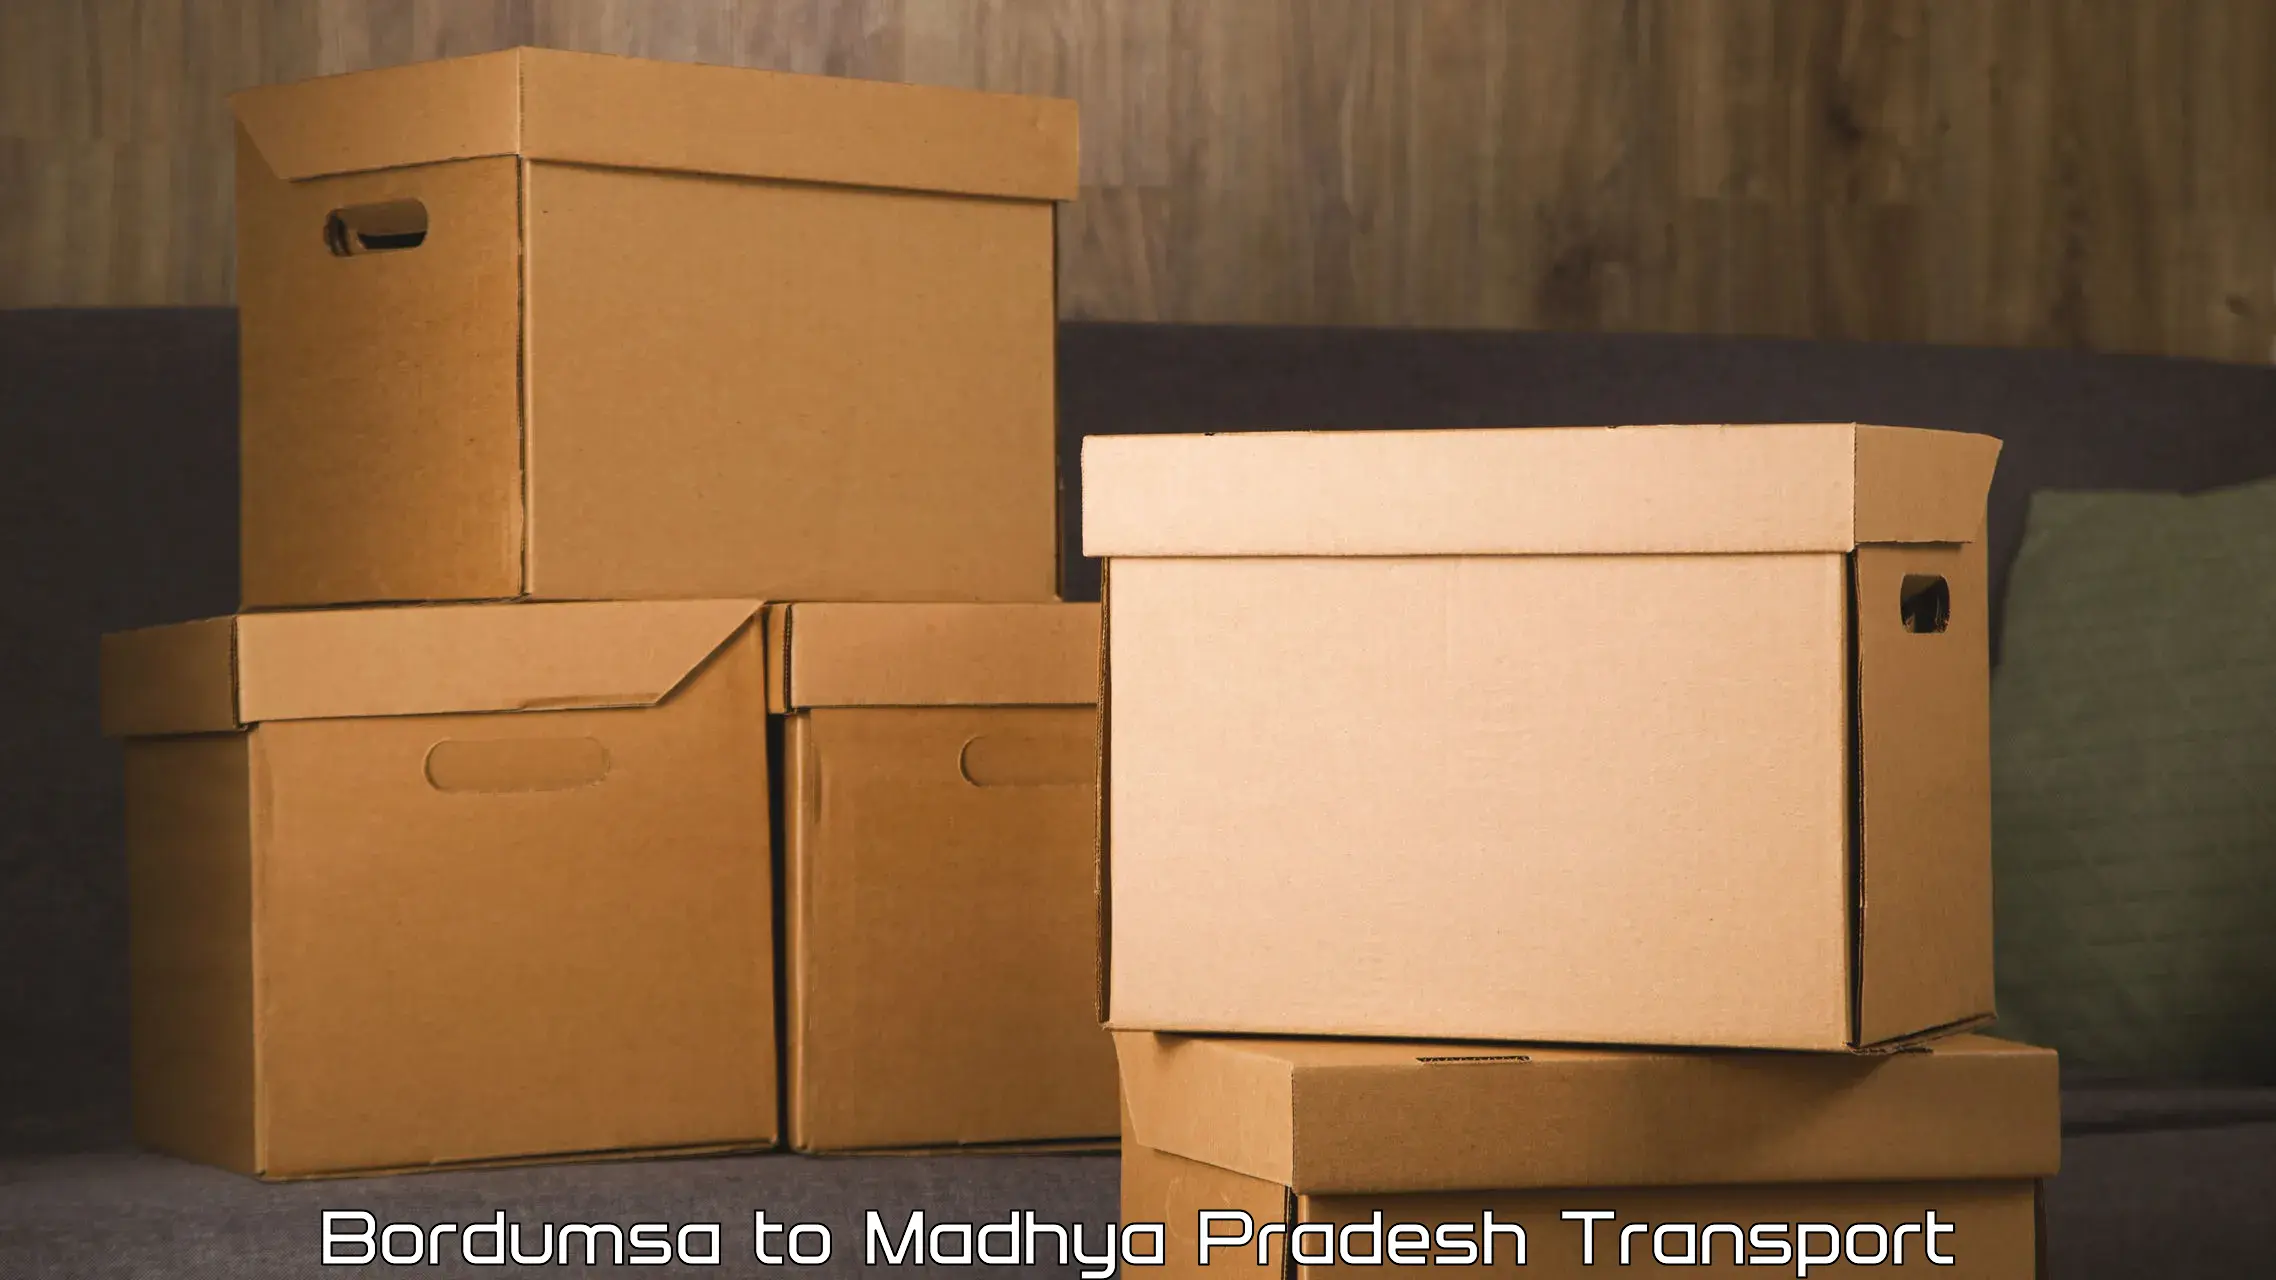 Transport in sharing Bordumsa to Madhya Pradesh